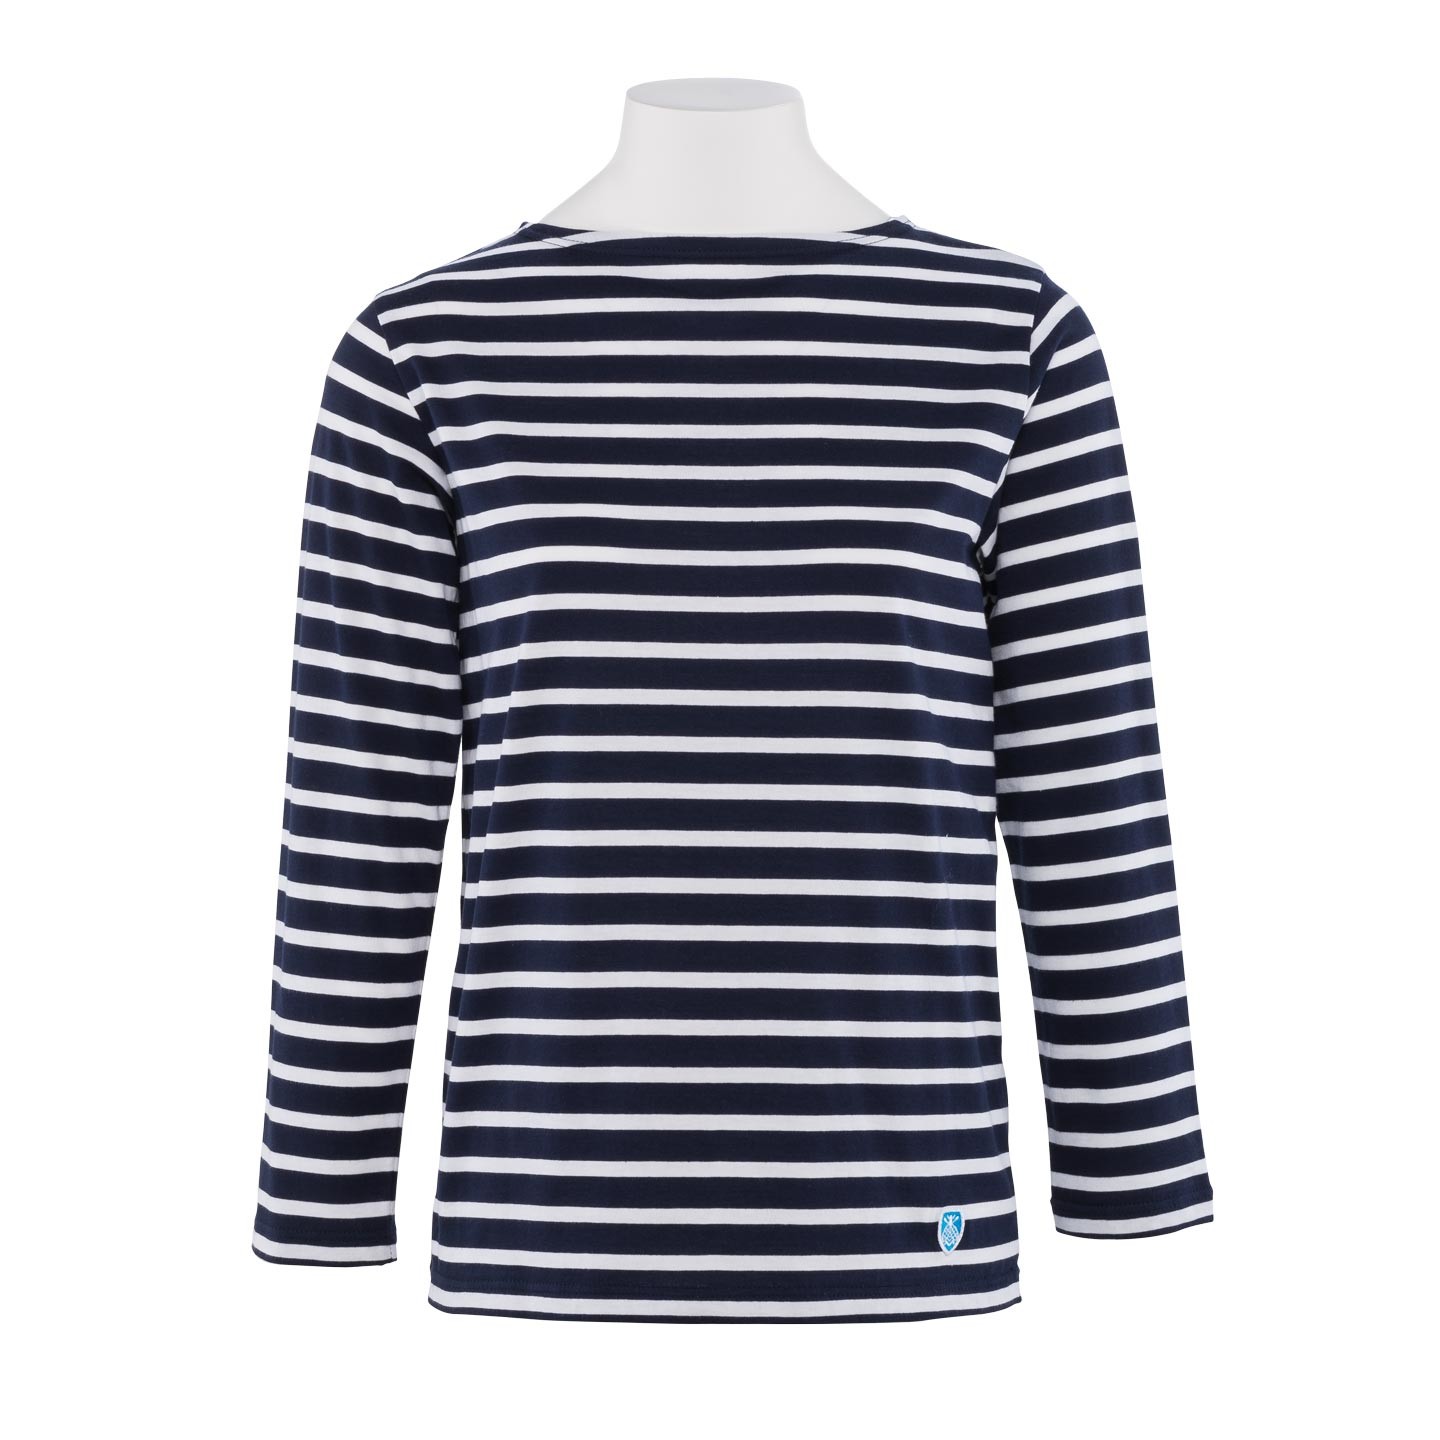 Striped shirt Navy / White, unisex